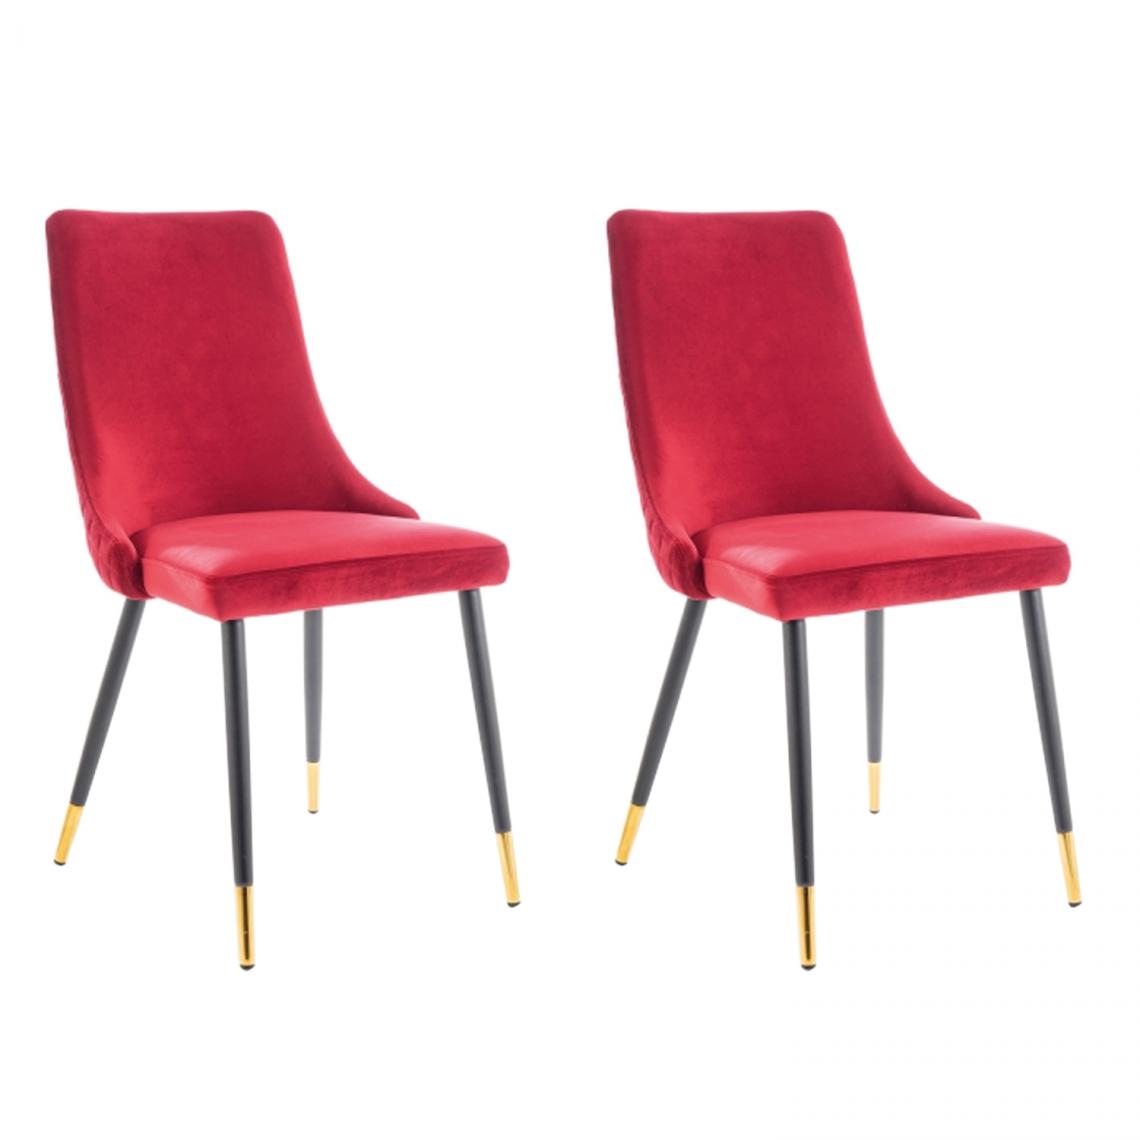 Hucoco - PIANO - Lot de 2 chaises élégantee avec coutures - Style glamour - 92x45x44 cm - Tissu velouté - Rouge - Chaises